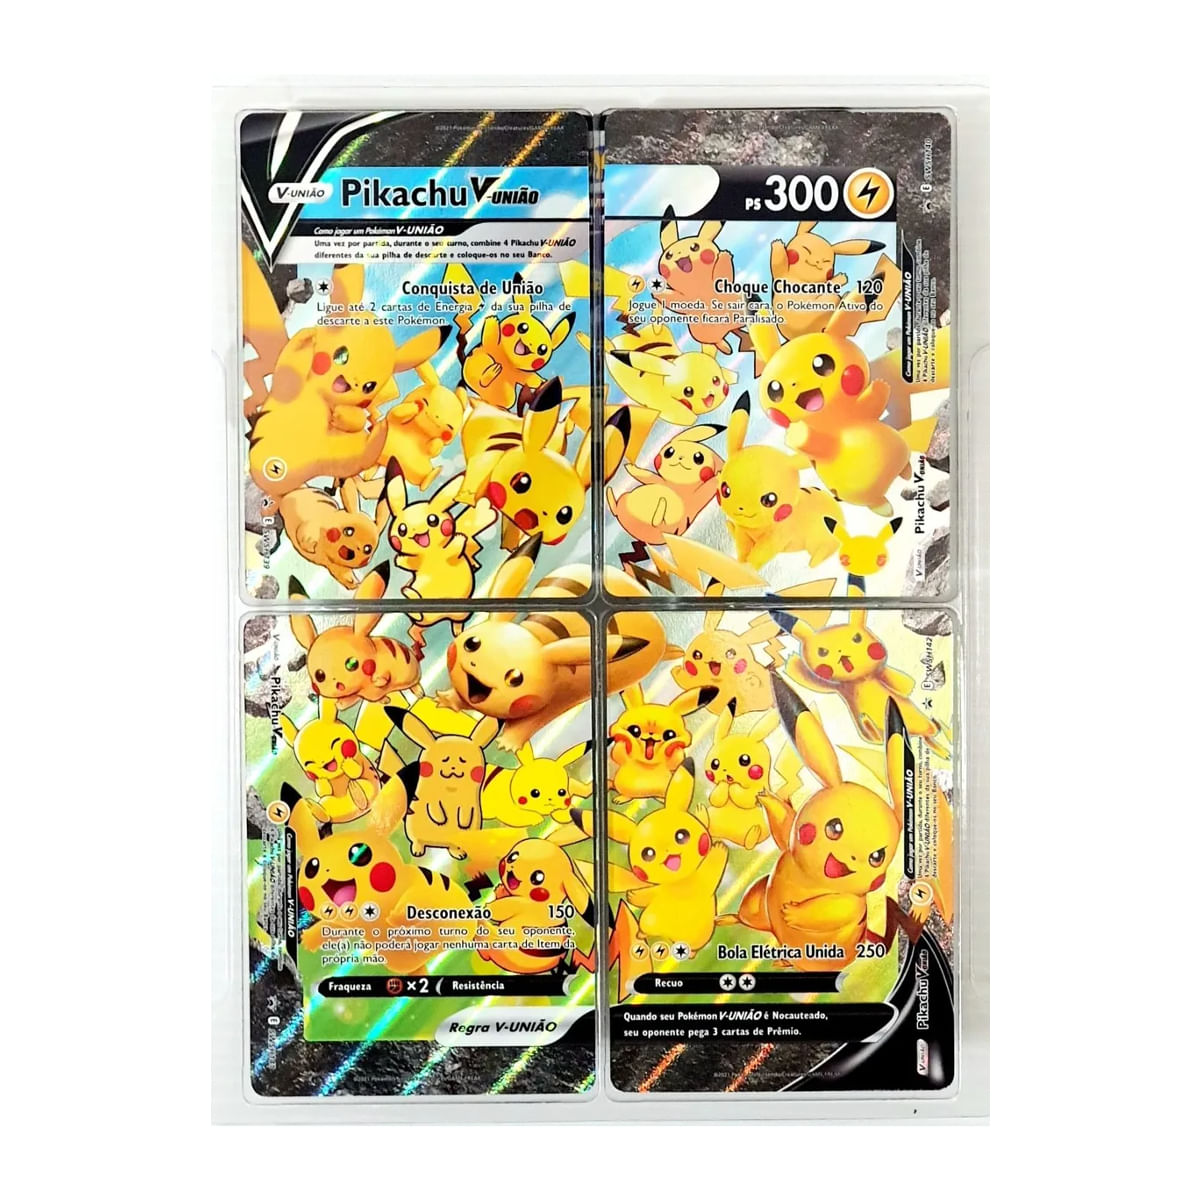 Card Pokémon Moltres De Galar V Full Art Original Copag